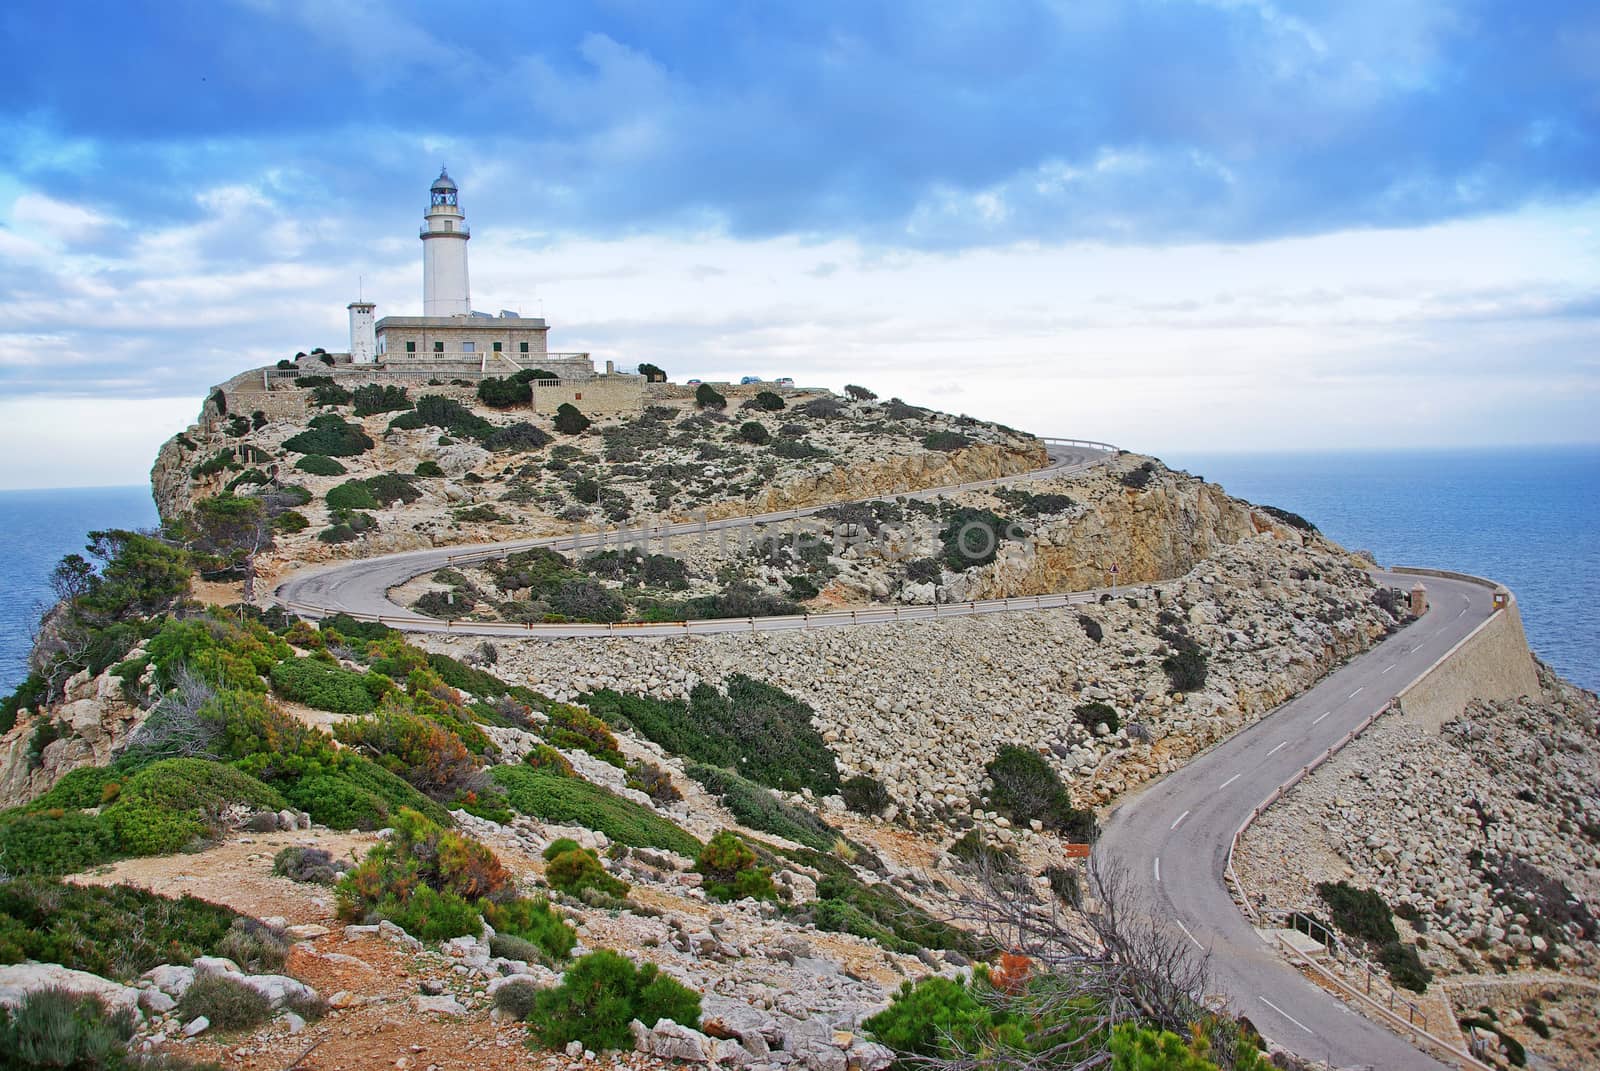 Formentor Lighthouse in Majorca (Spain)